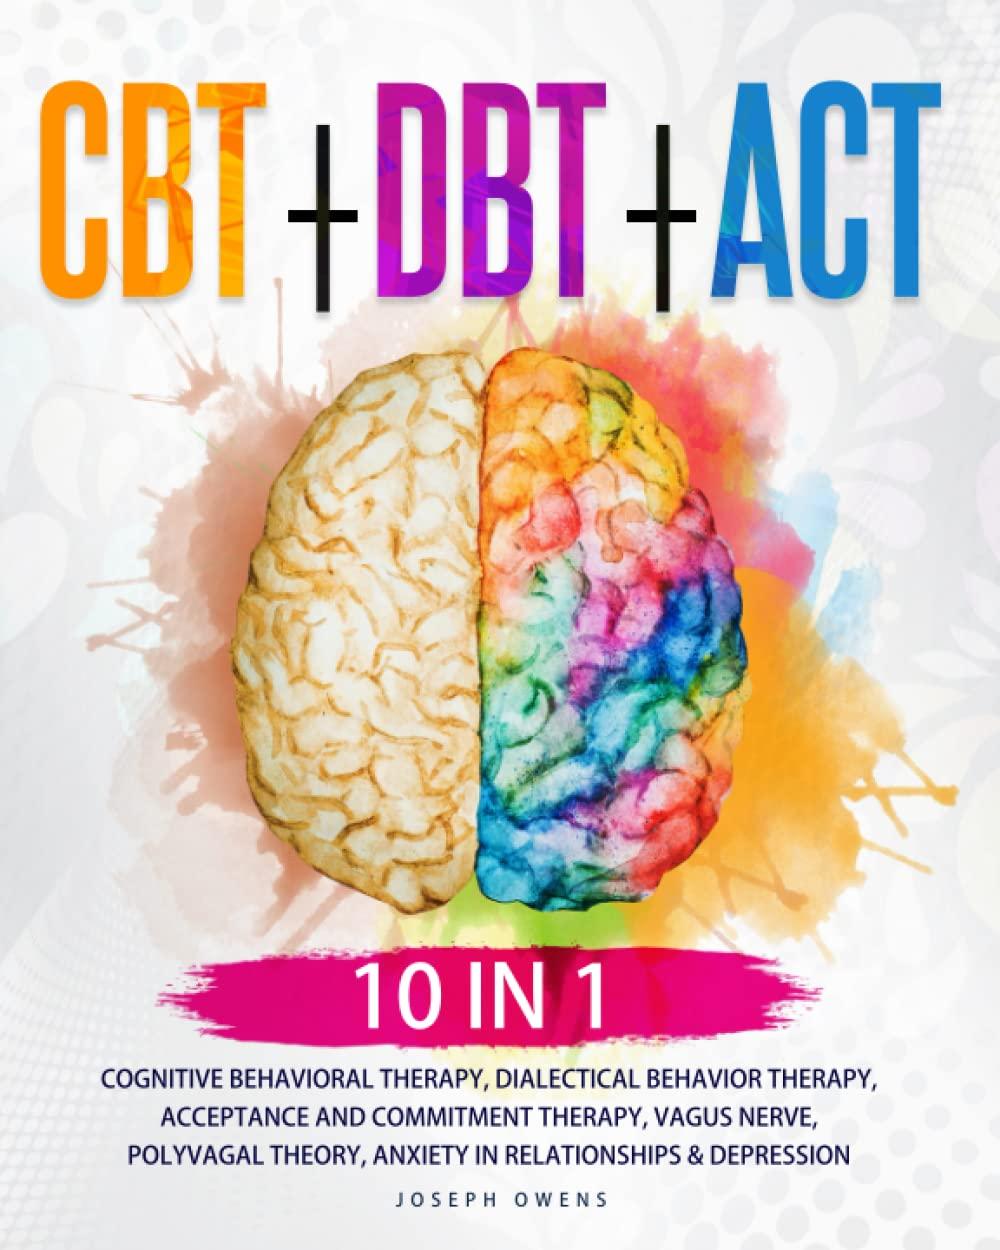 cbt + dbt + act 10 in 1 1st edition joseph owen b0bq9ktjk4, 979-8369972540